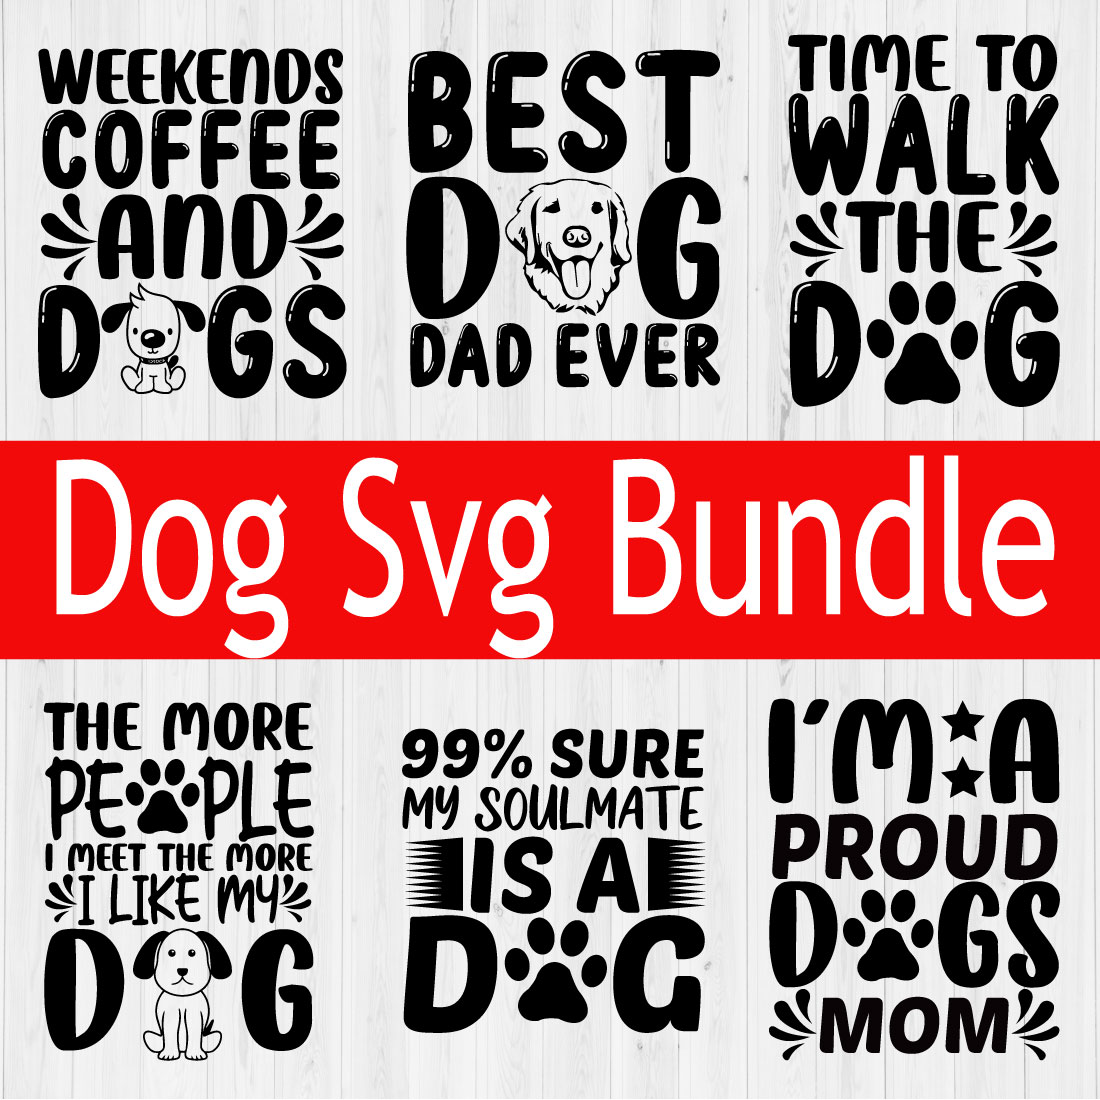 Dog Svg Typography Design Bundle Vol10 cover image.